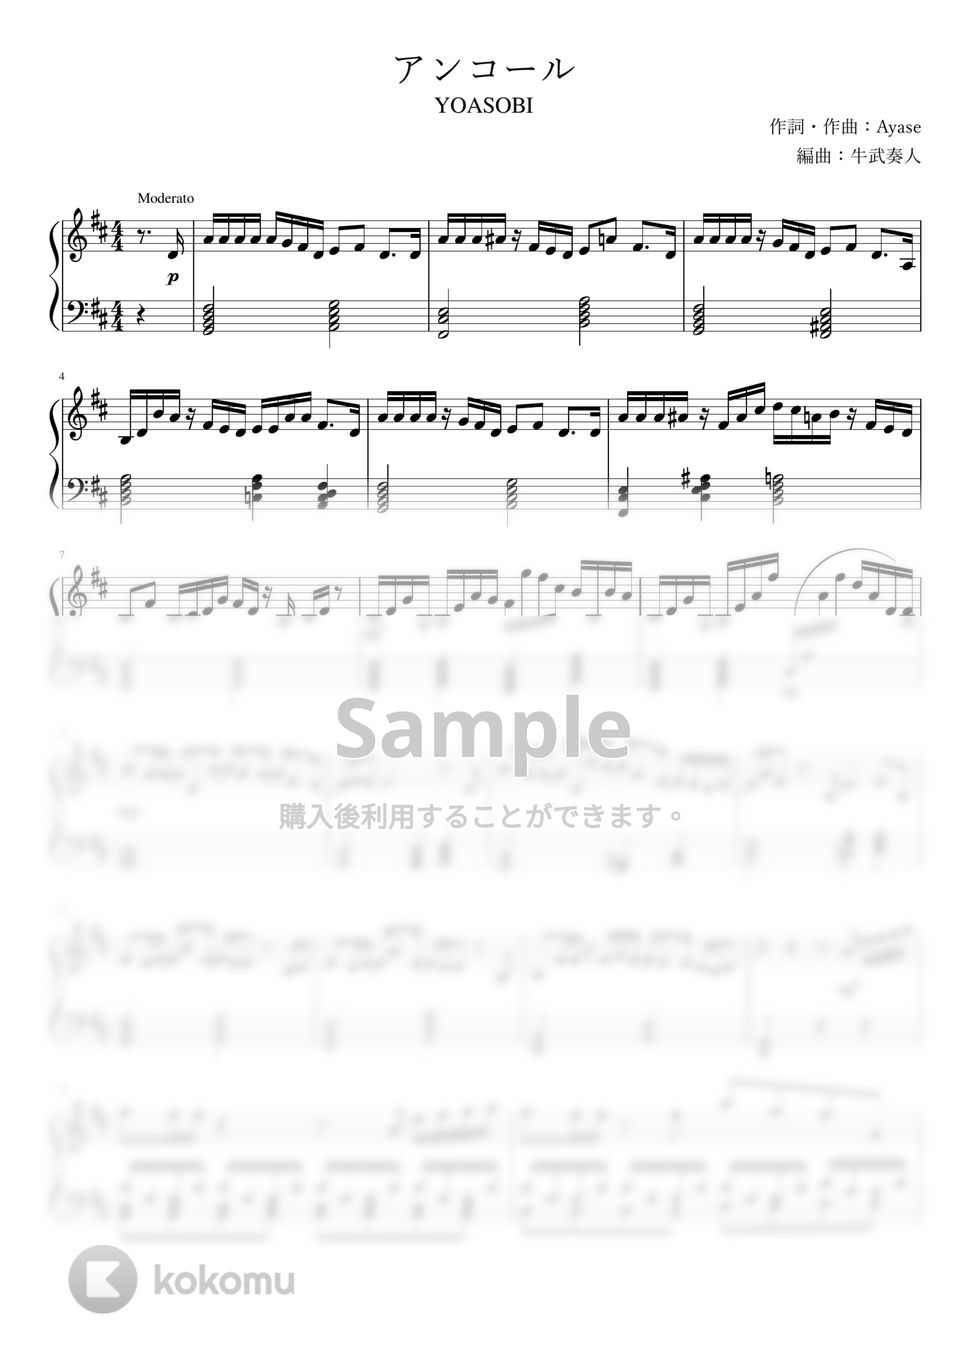 YOASOBI - アンコール (上級ピアノソロ) by 牛武奏人